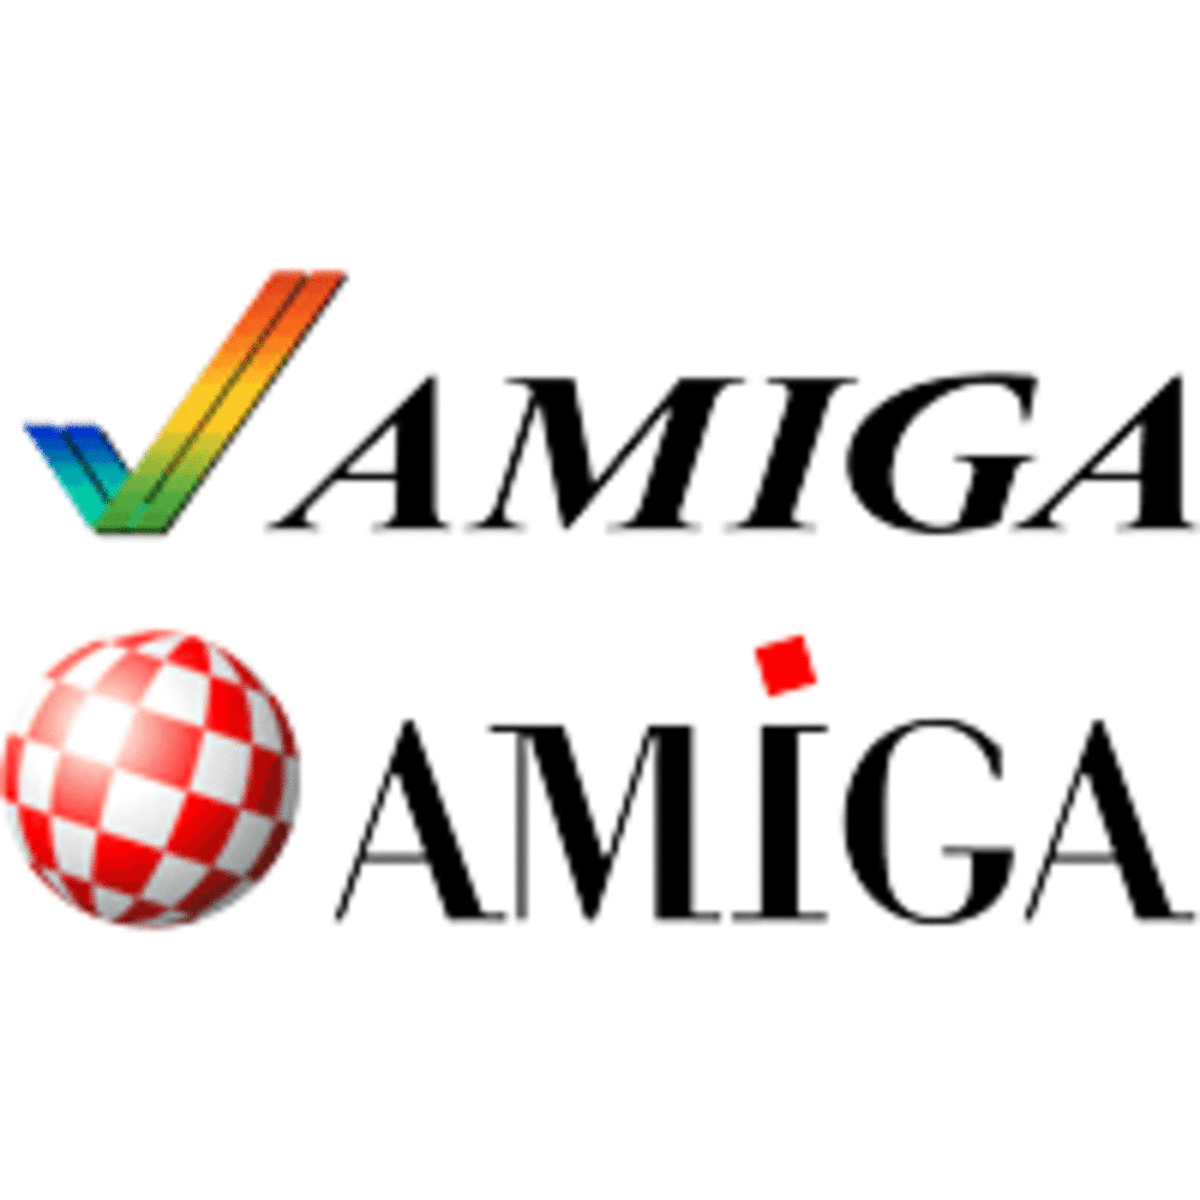 The Amiga logo still looks good today